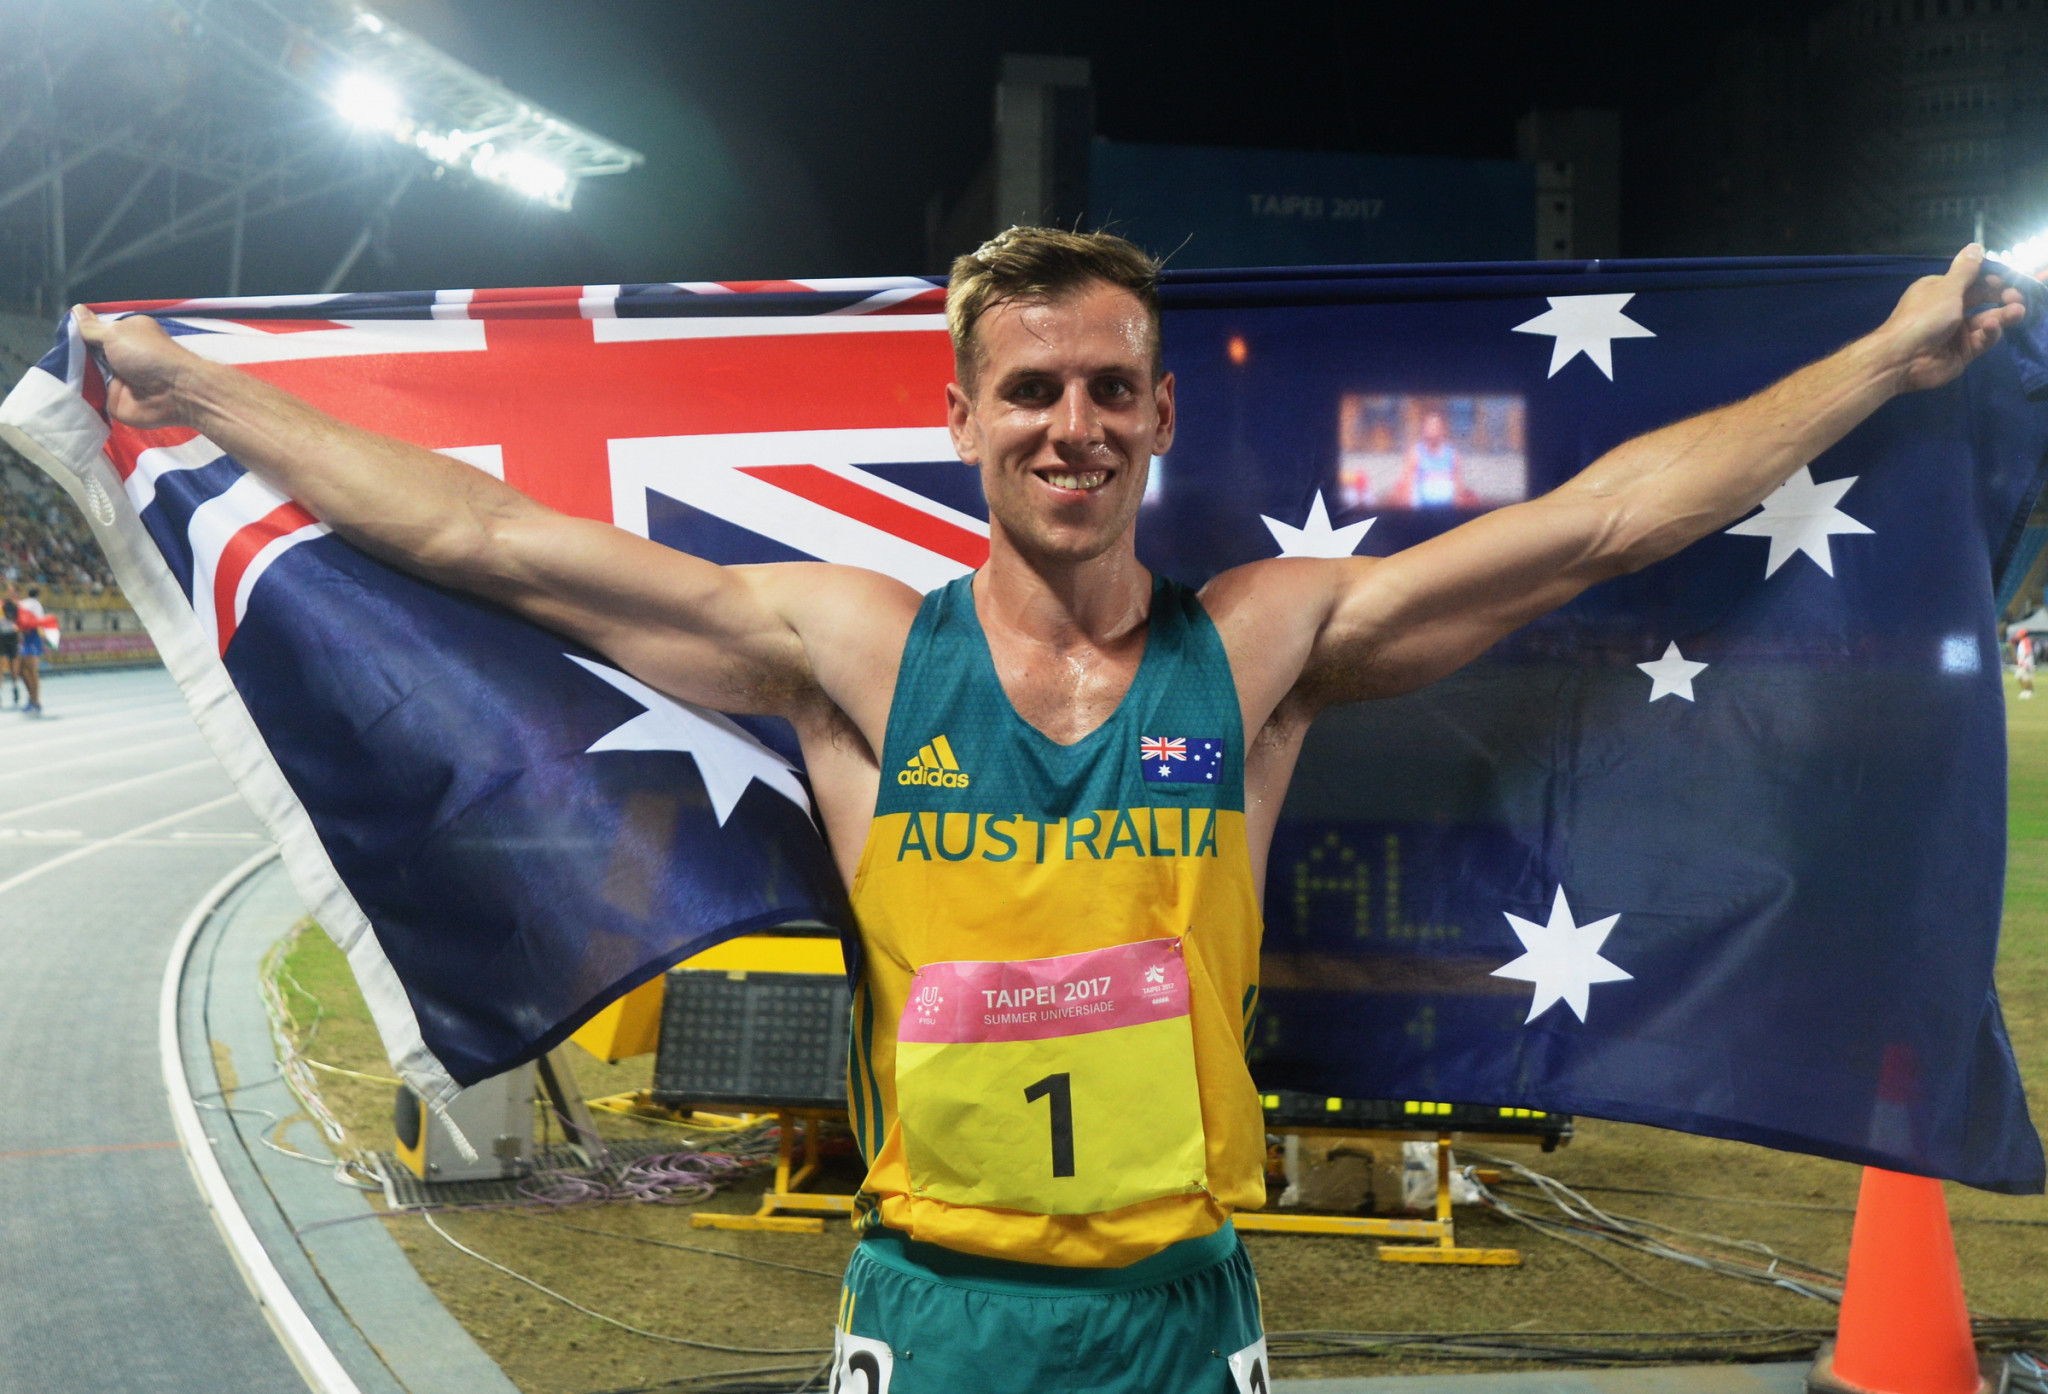 Australia’s Kyle Cranston won the men's decathlon title ©Taipei 2017